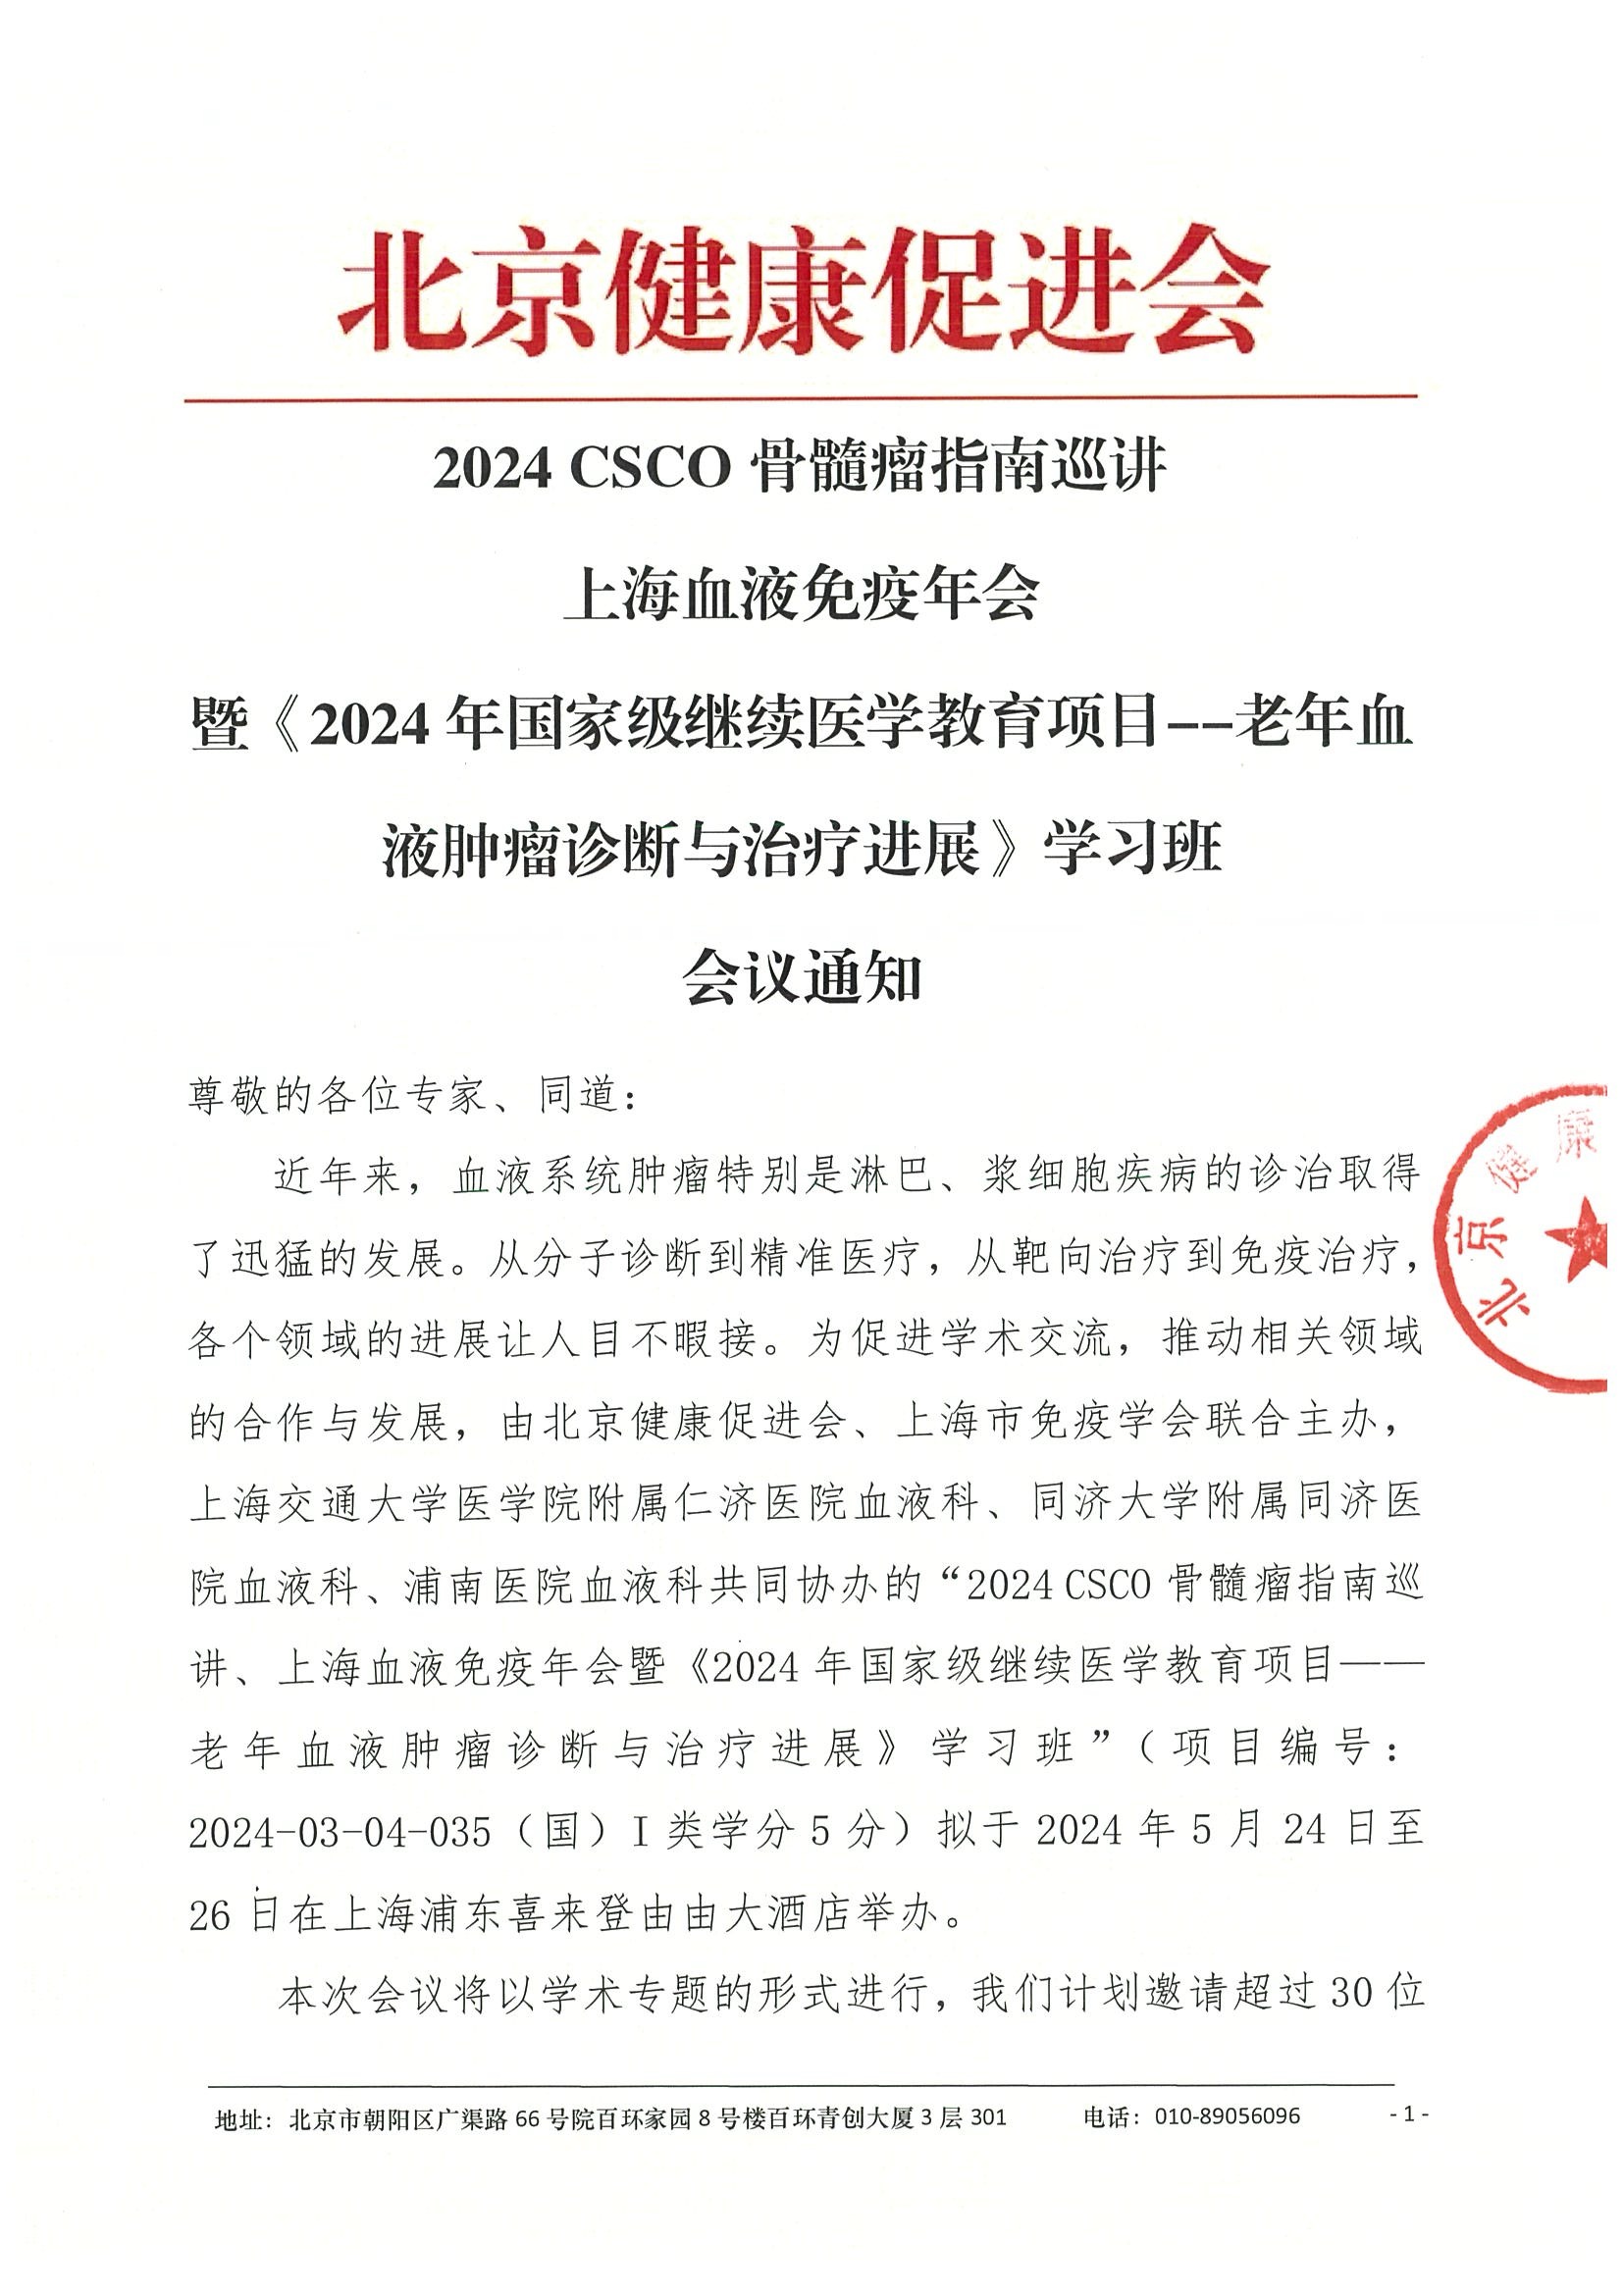 2024 CSCO骨髓瘤指南巡讲 上海血液免疫年会暨《2024年国家级继续医学教育项目项目--老年血液肿瘤诊断与治疗进展》学习班-会议通知.jpeg